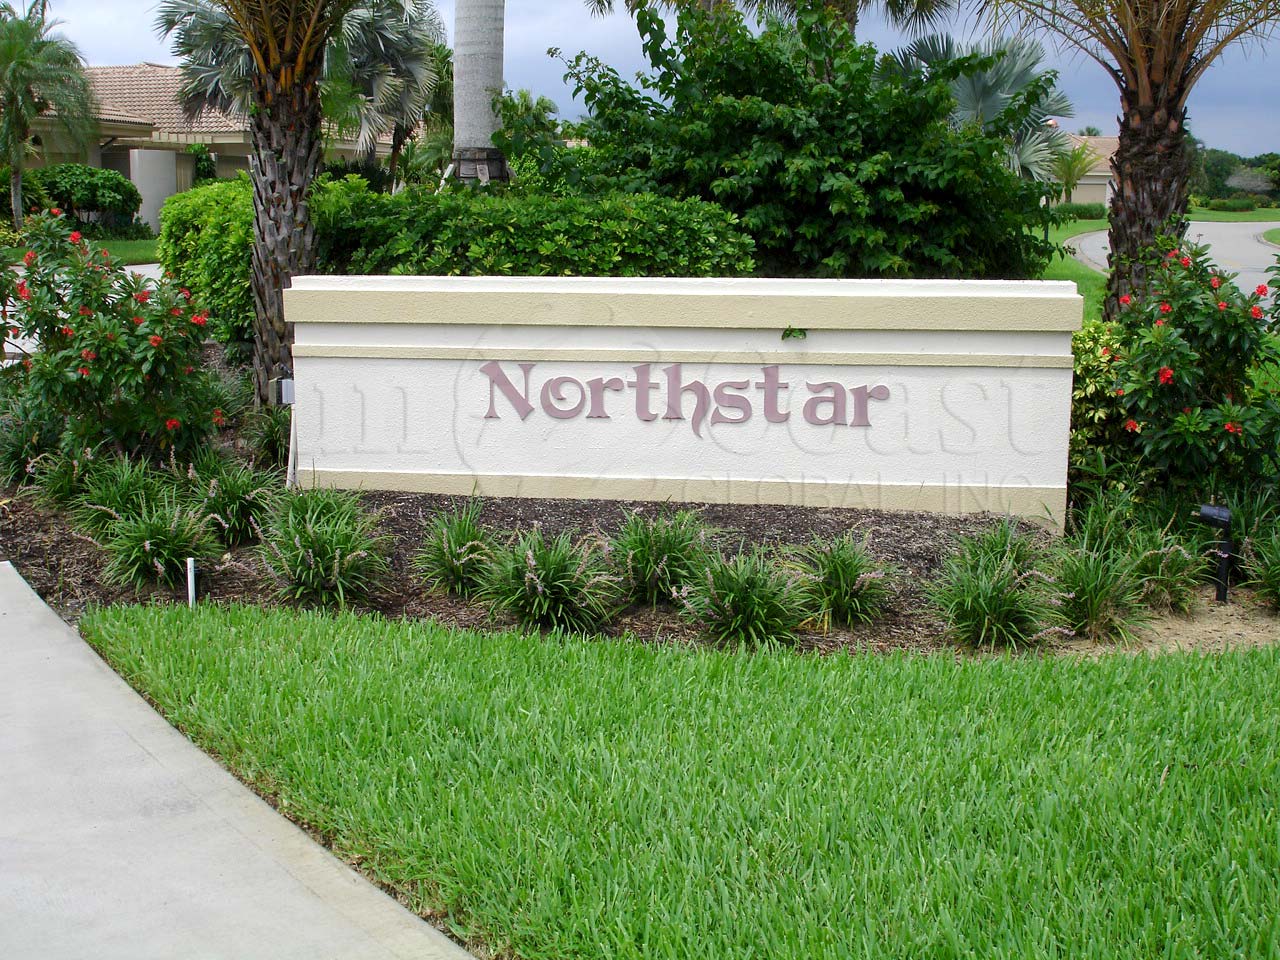  Northstar Villas sign